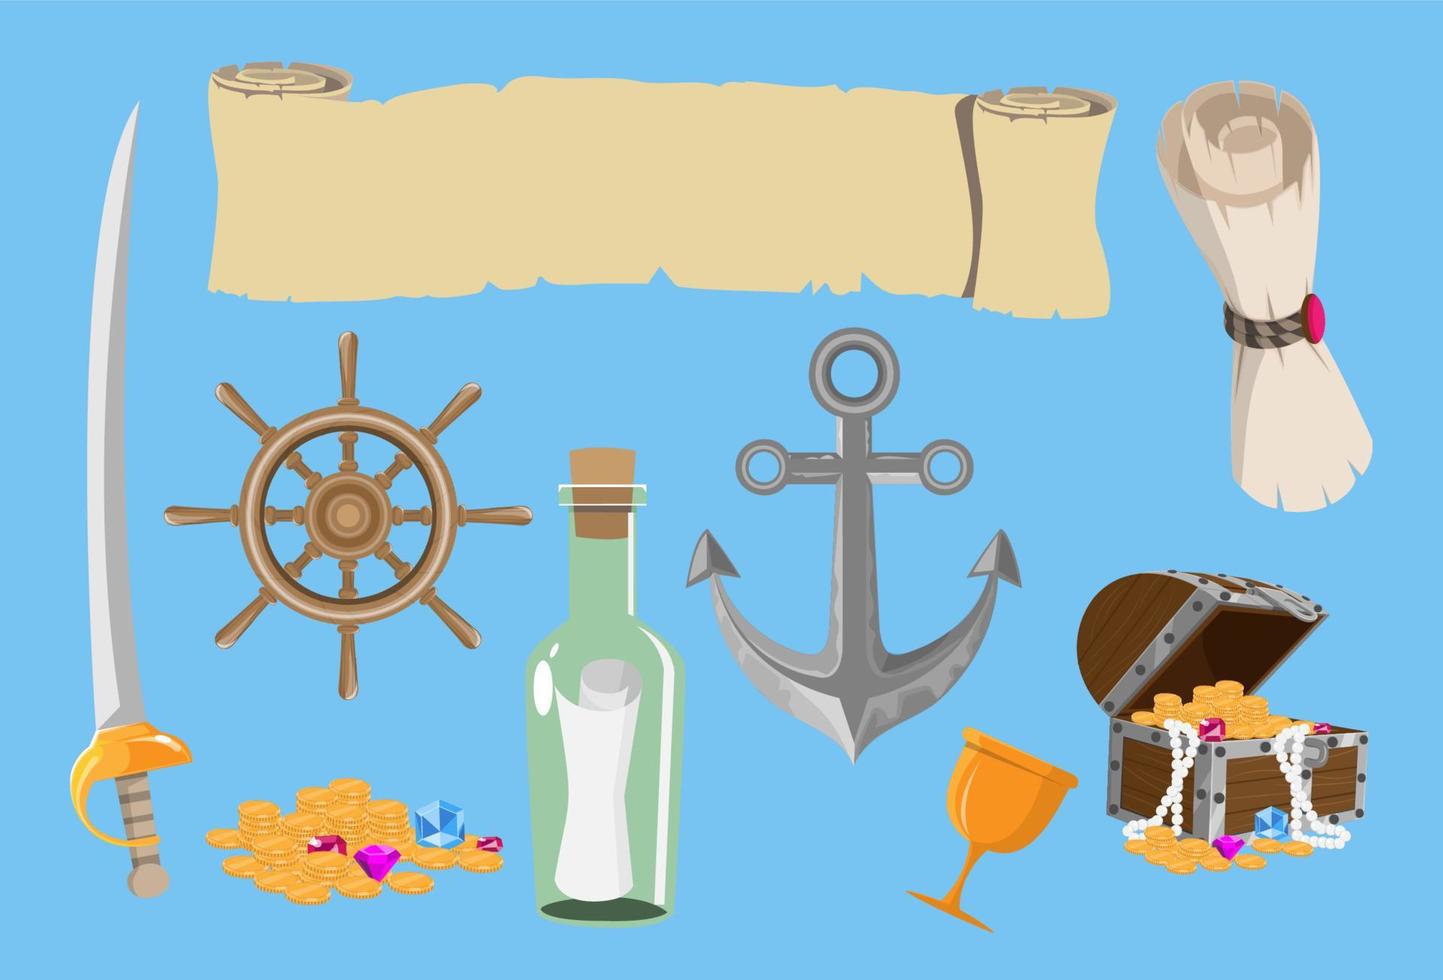 Piraten-Cartoon-Vektorspiel-Schatz-Objektsatz. Sammlung von Meeresabenteuerelementen vektor